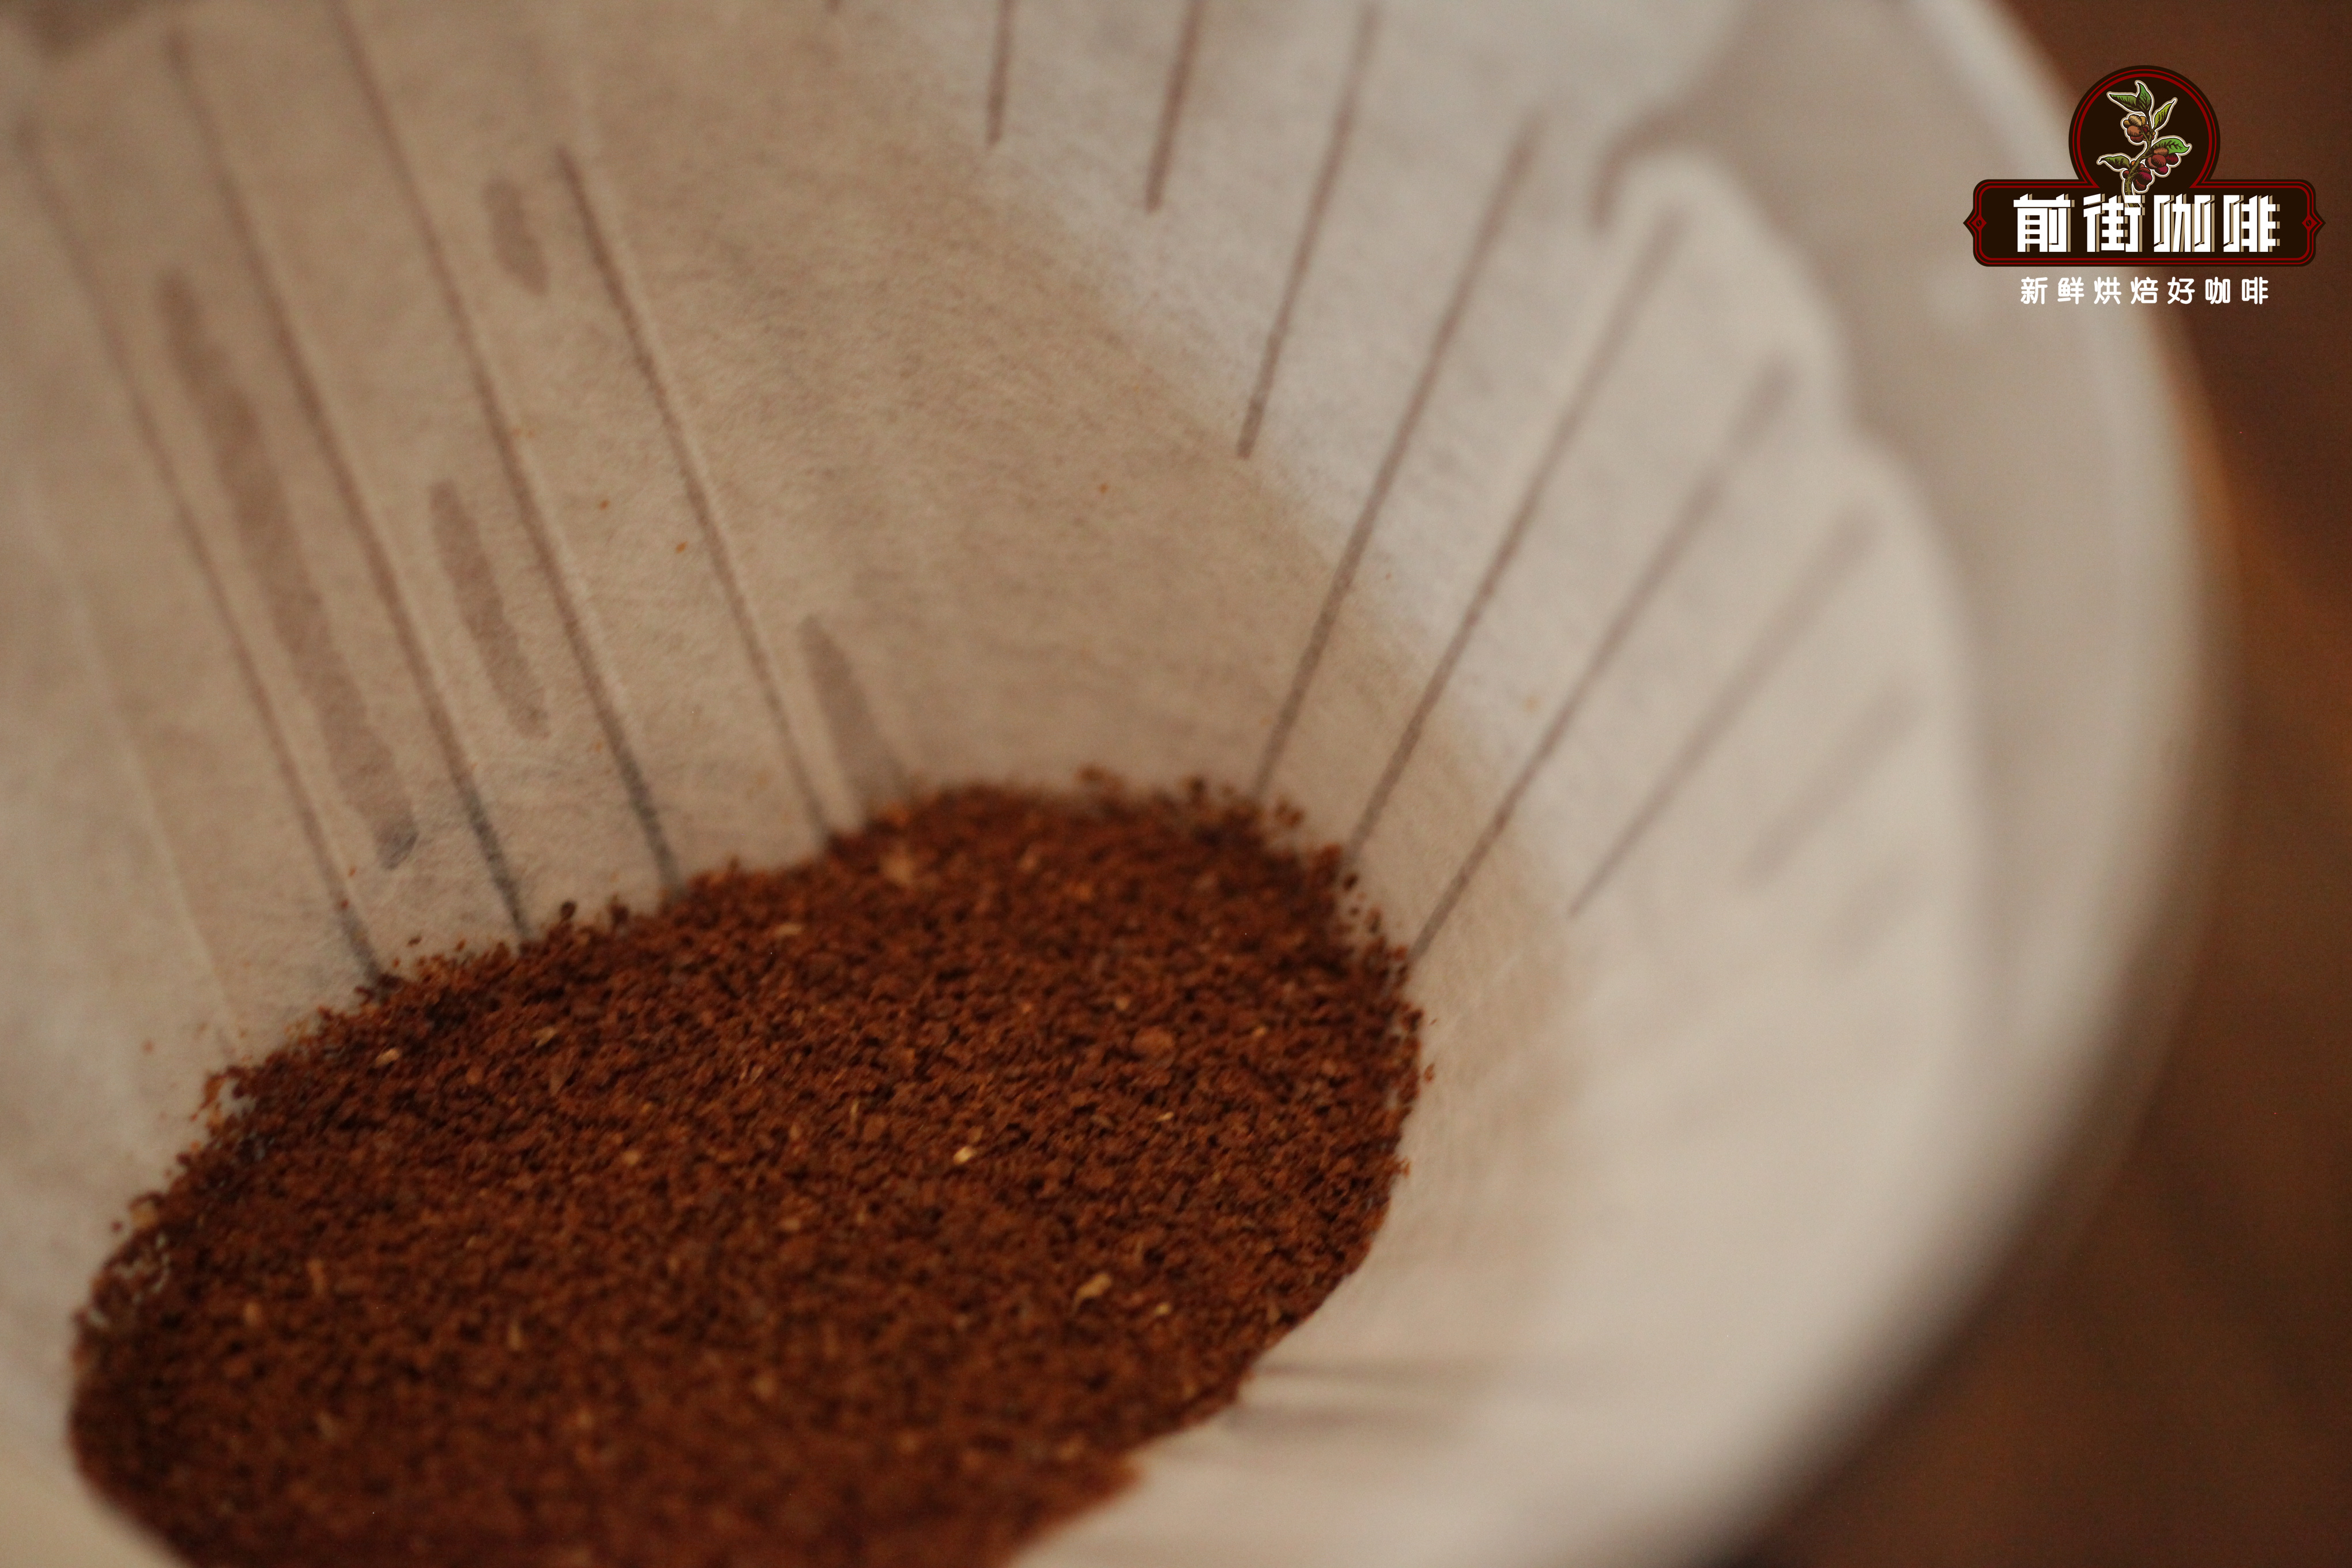 預磨咖啡沒有現磨咖啡那麼香嗎 預磨咖啡和現磨咖啡的區別